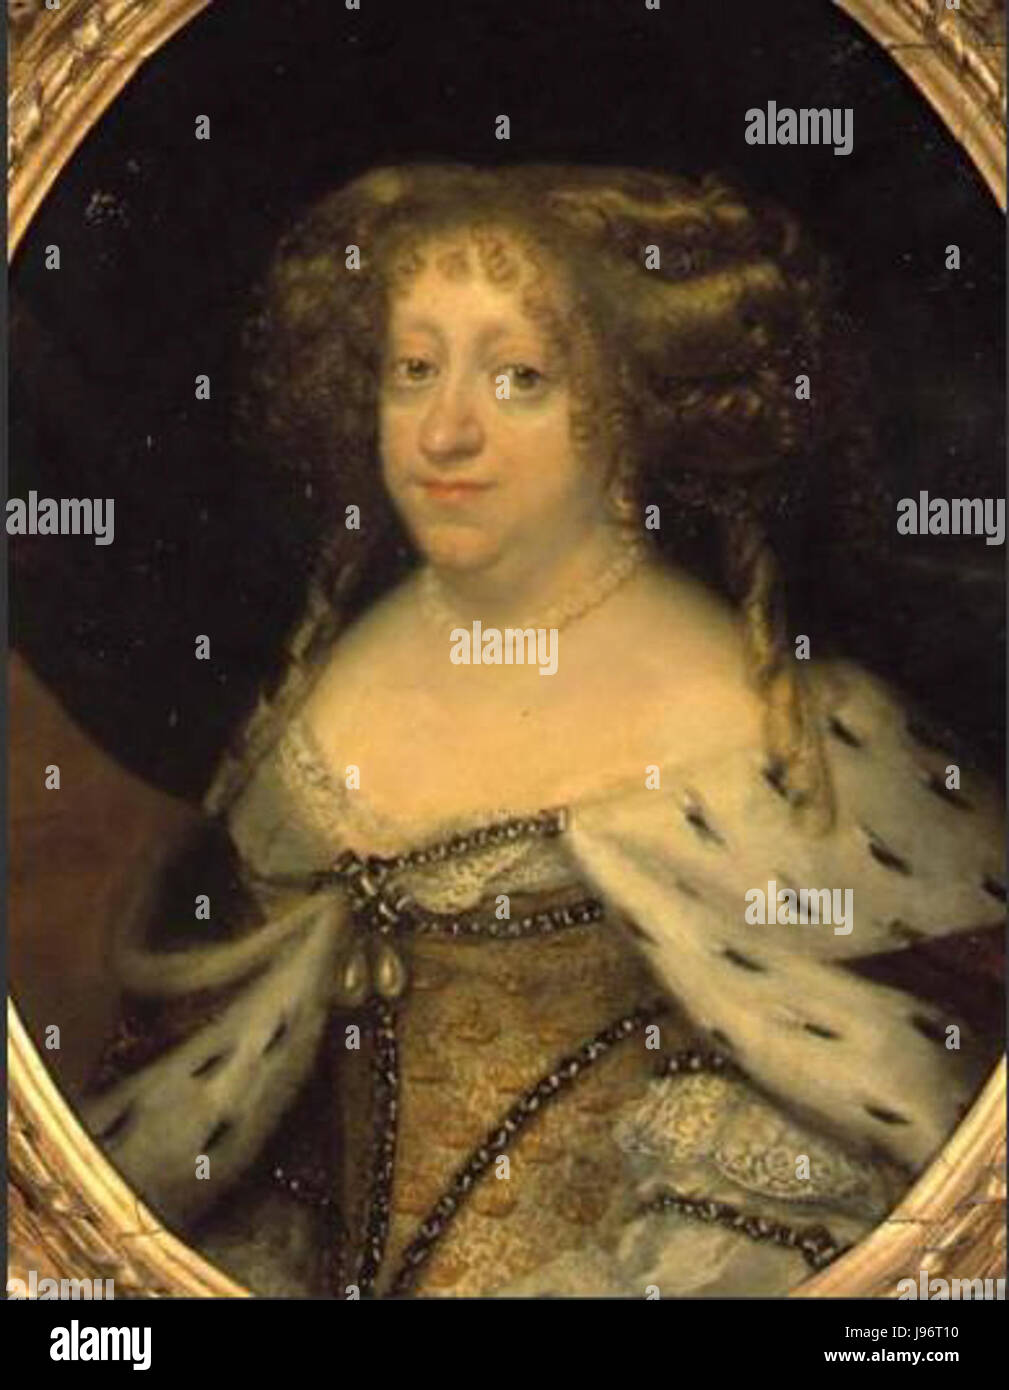 Königin Sophie Amalie gemalt in Öl auf Kupfer von Abraham Wuchters um 1680 Stockfoto